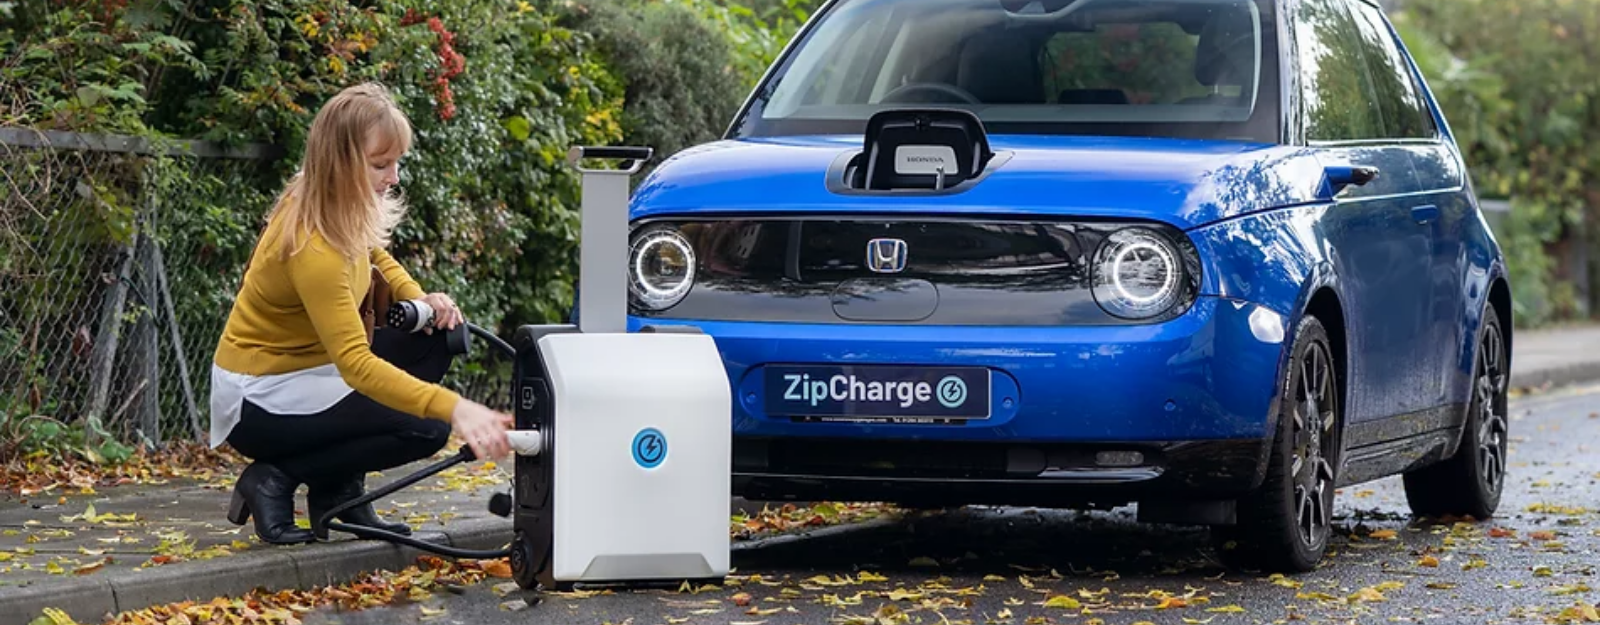 La start-up ZipCharge dévoile une batterie de secours (Powerbank